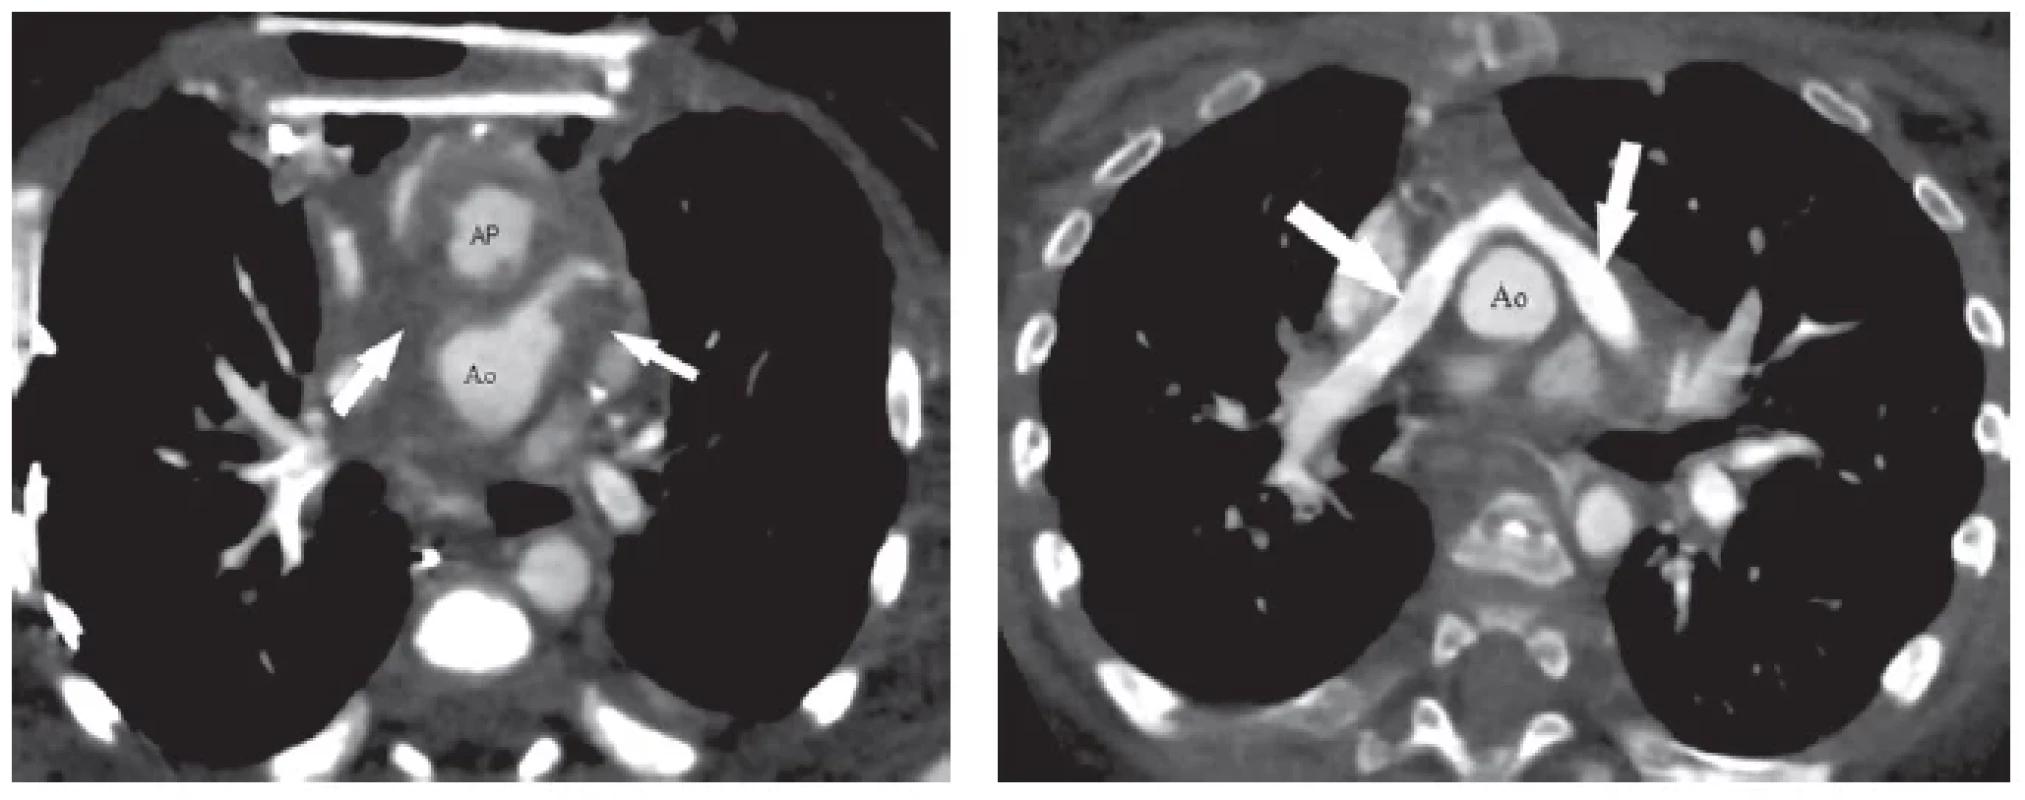 CTA u 2-týždňového pacienta s D-transpozíciou veľkých ciev po chirurgickej korekcii (arteriálny switch s LeCompte manévrom)
na ECMO (mimotelový obeh) pre závažnú hypoxémiu (pacient s otvoreným hrudníkom). CTA (obrázok vľavo) odhalilo kompletnú trombózu
oboch ramien pľúcnice (šípky ukazujú na miesta, kde by mali byť opacifikovné ramená pľúcnice). Pacient prežil iba vďaka alternatívnej
perfúzii pľúc prostredníctvom aortopulmonálnych kolaterál. Na základe CTA nálezu bola u pacienta realizovaná chirurgická trombektómia
s výborným efektom. Kontrolné CTA už po zatvorení hrudníka bez ECMO (obrázok vpravo). Šípky ukazujú na ramená pľúcnice obsadajúce
aortu po LeCompte manévri. Oba obrázky v axiálnej projekcii.